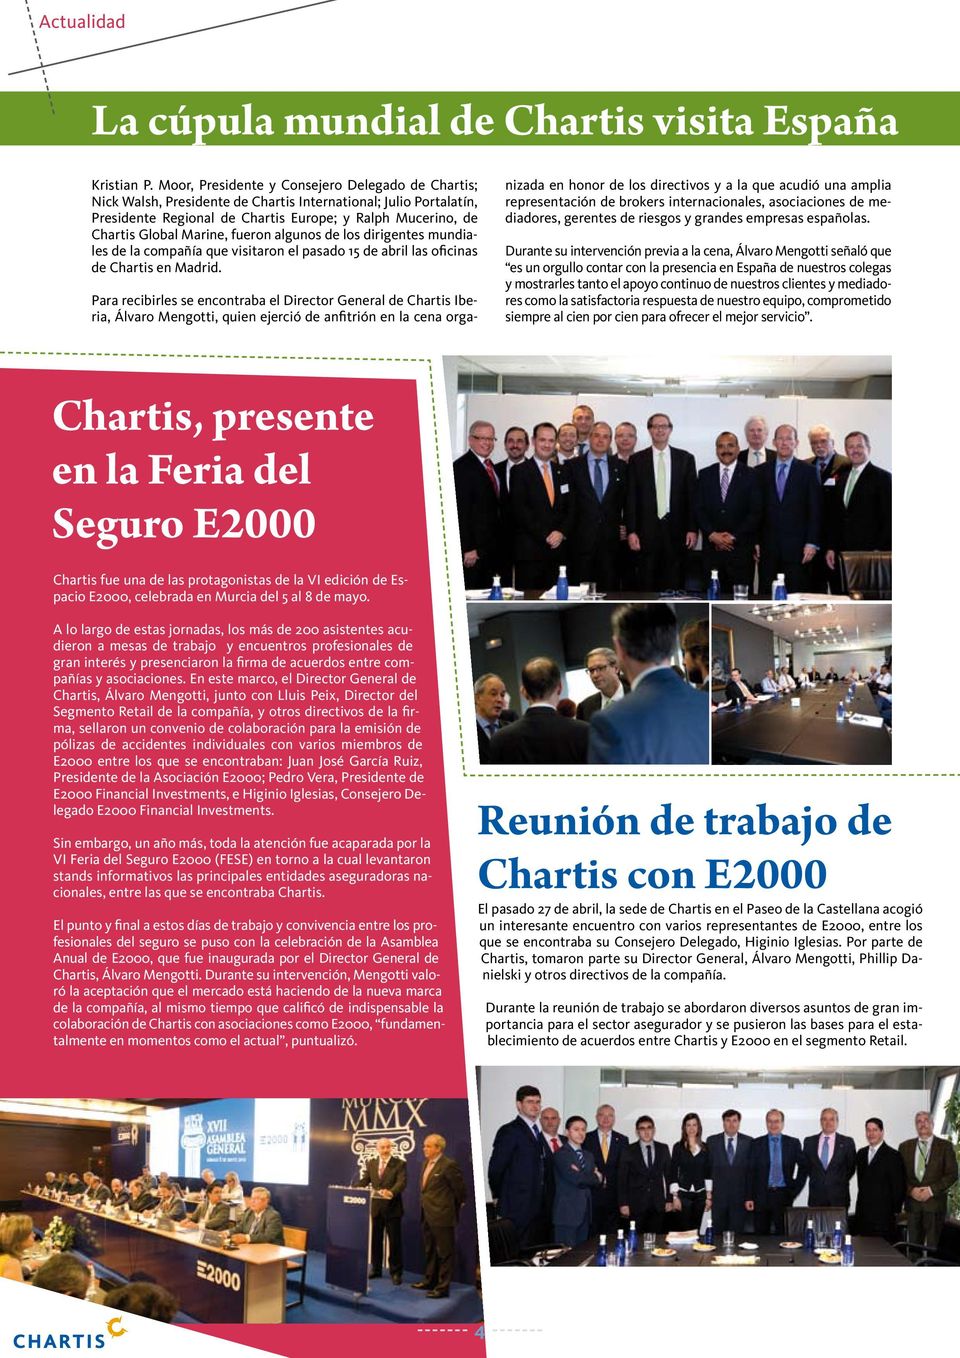 fueron algunos de los dirigentes mundiales de la compañía que visitaron el pasado 15 de abril las oficinas de Chartis en Madrid.